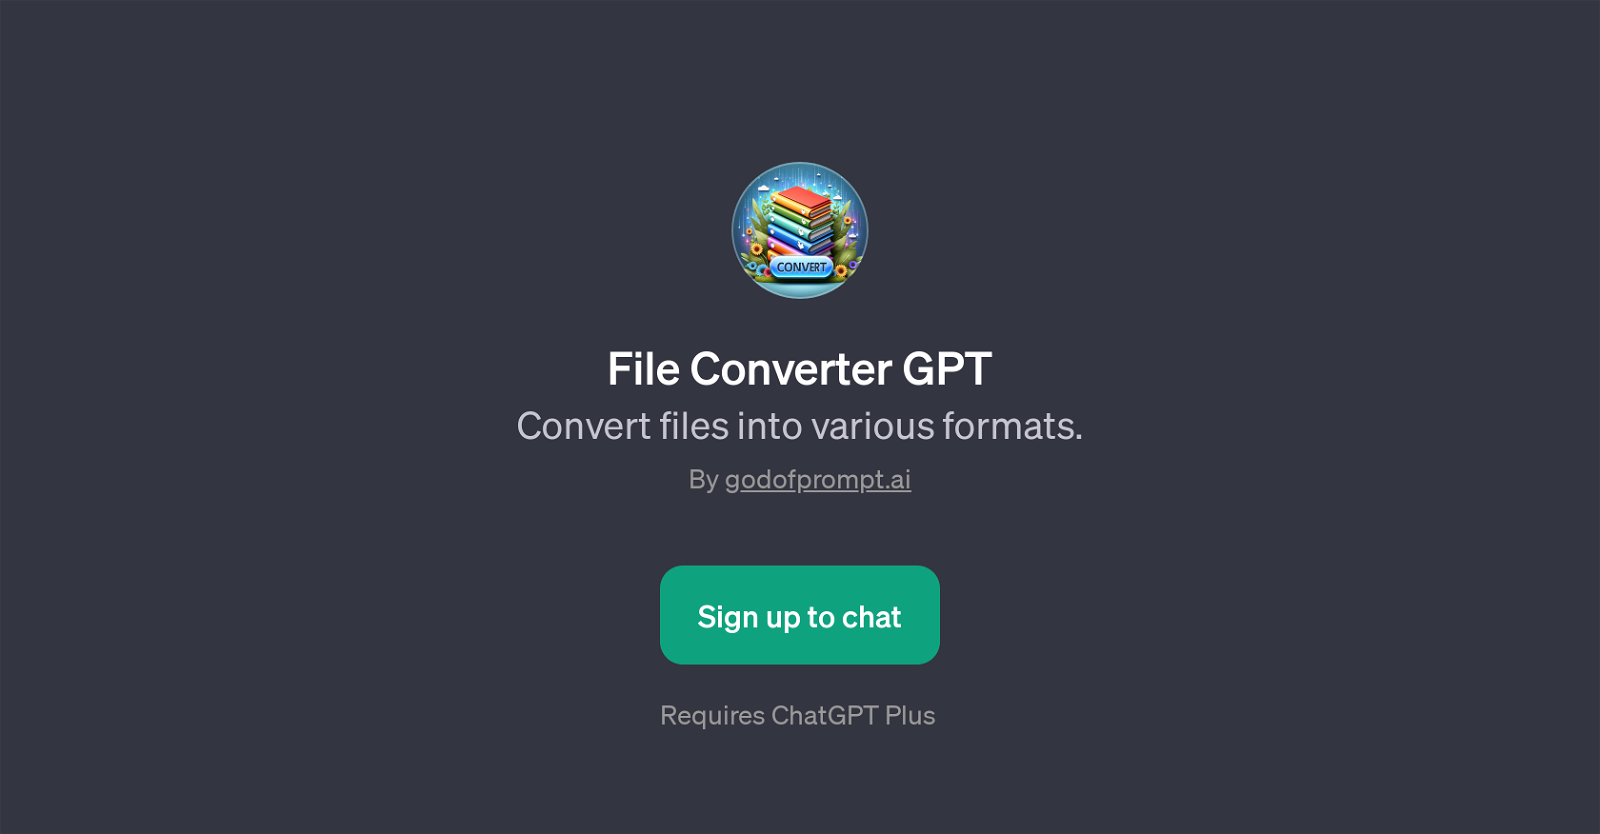 File Converter GPT website